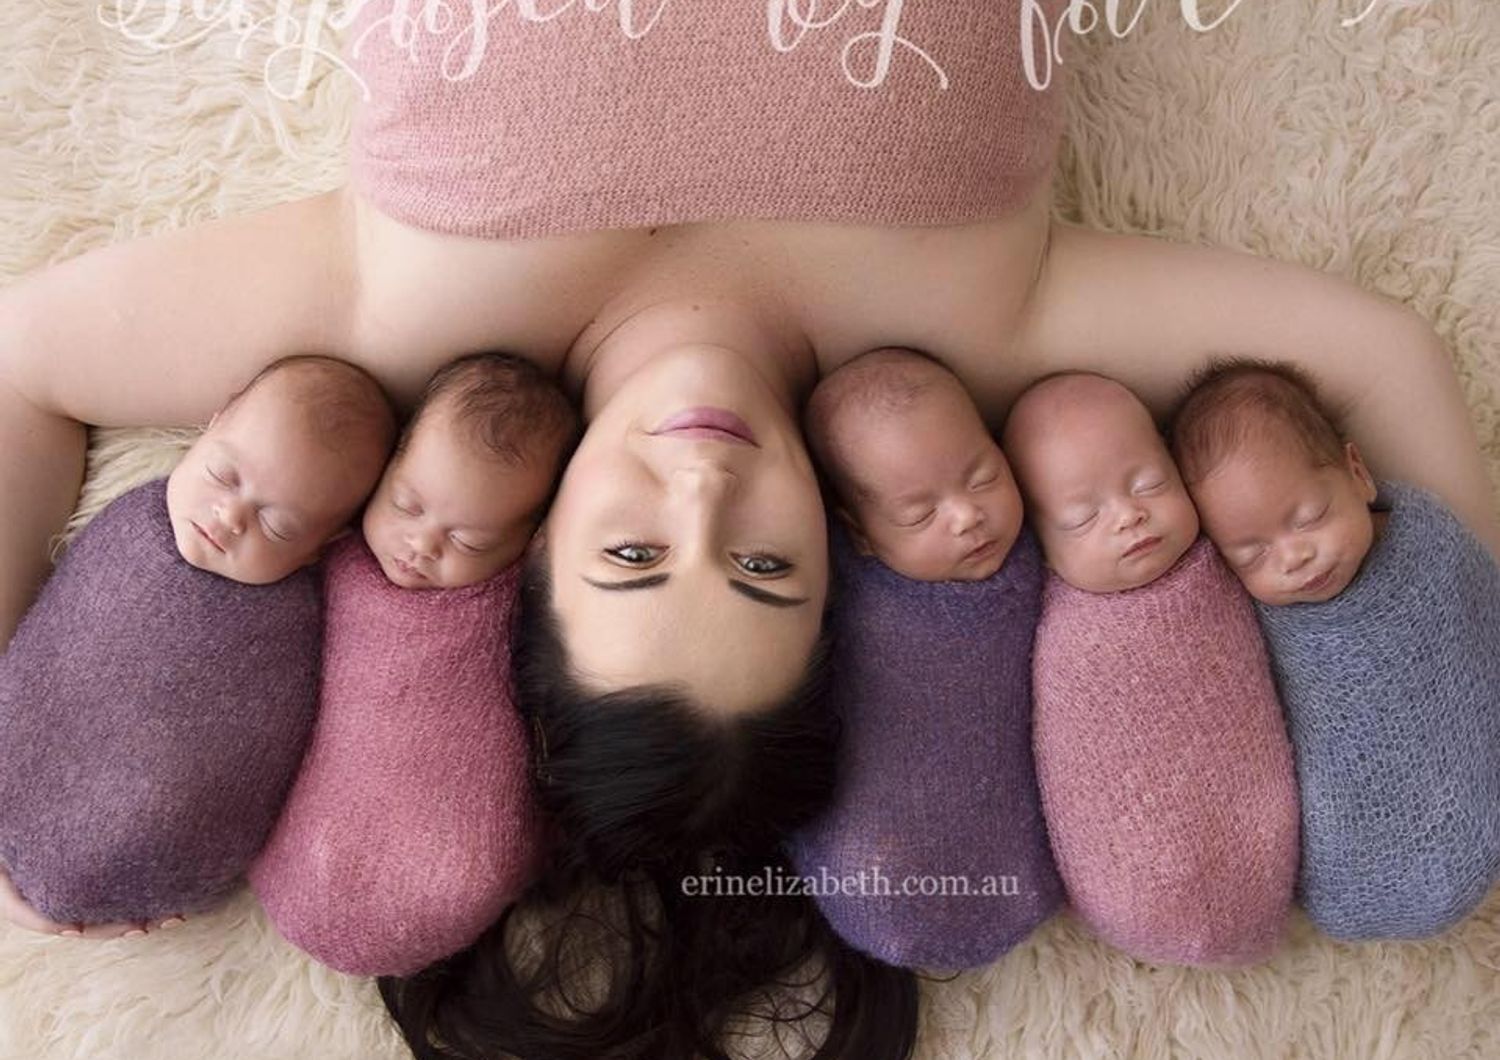 I cinque gemelli di Kim, le foto che incantano